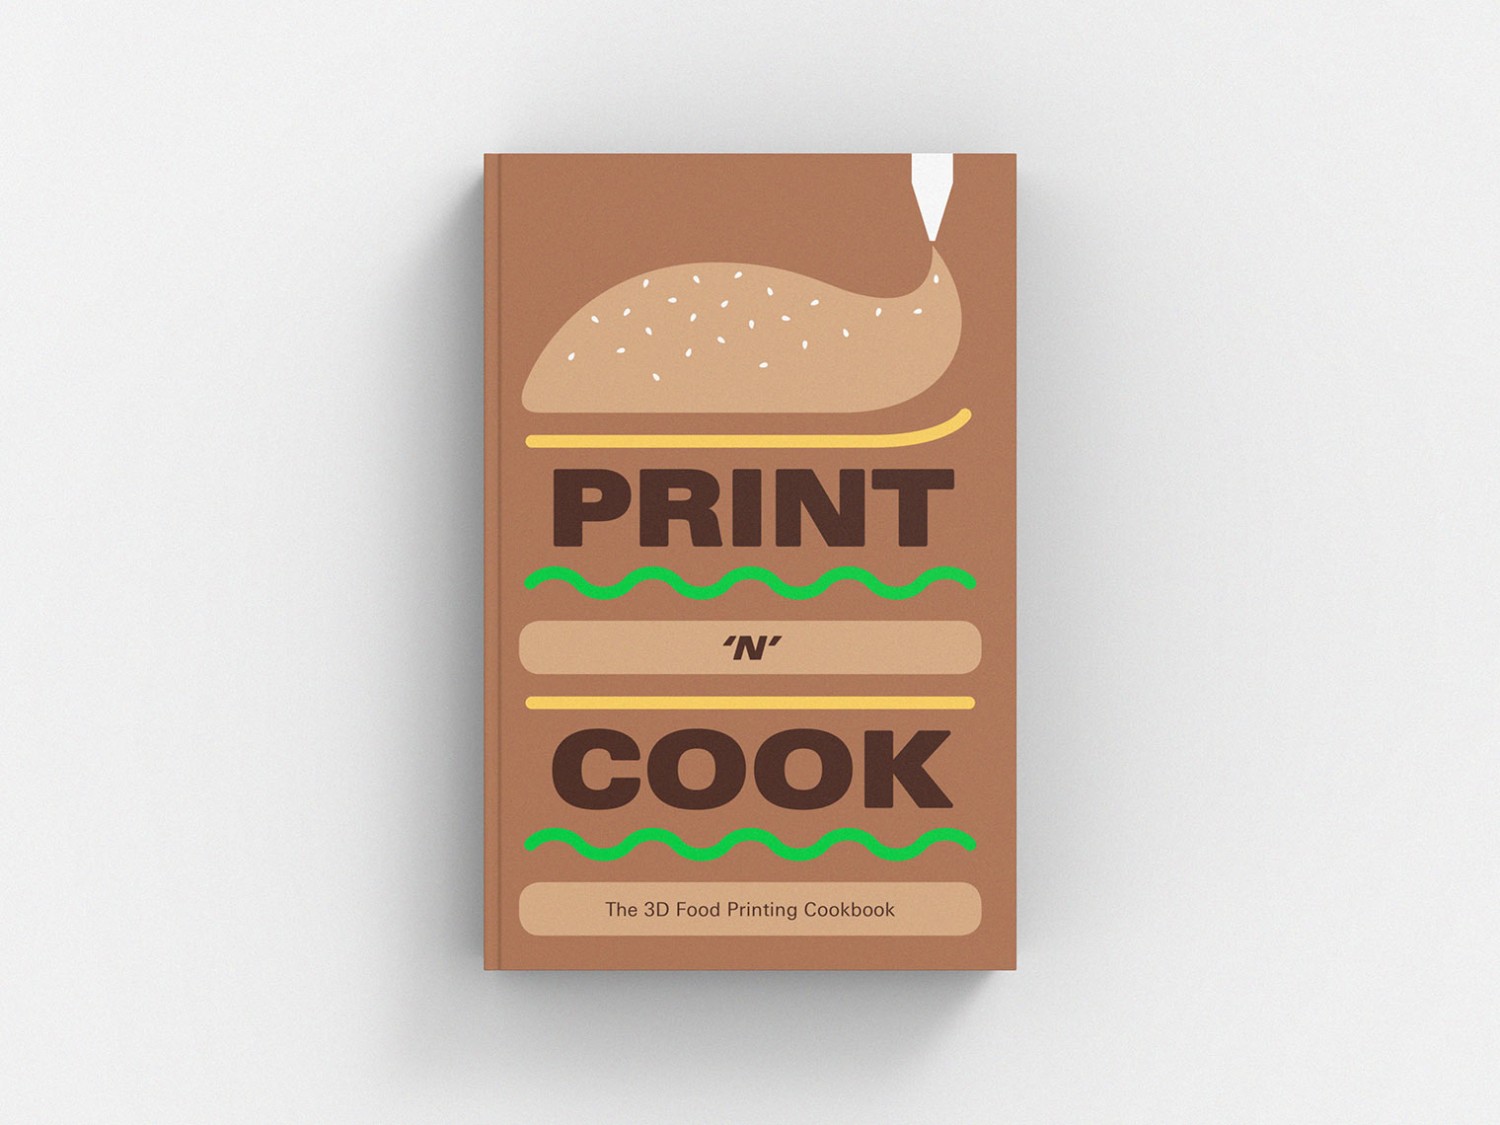 Print ‘n’ Cook:
The 3D Food Printing Cookbook